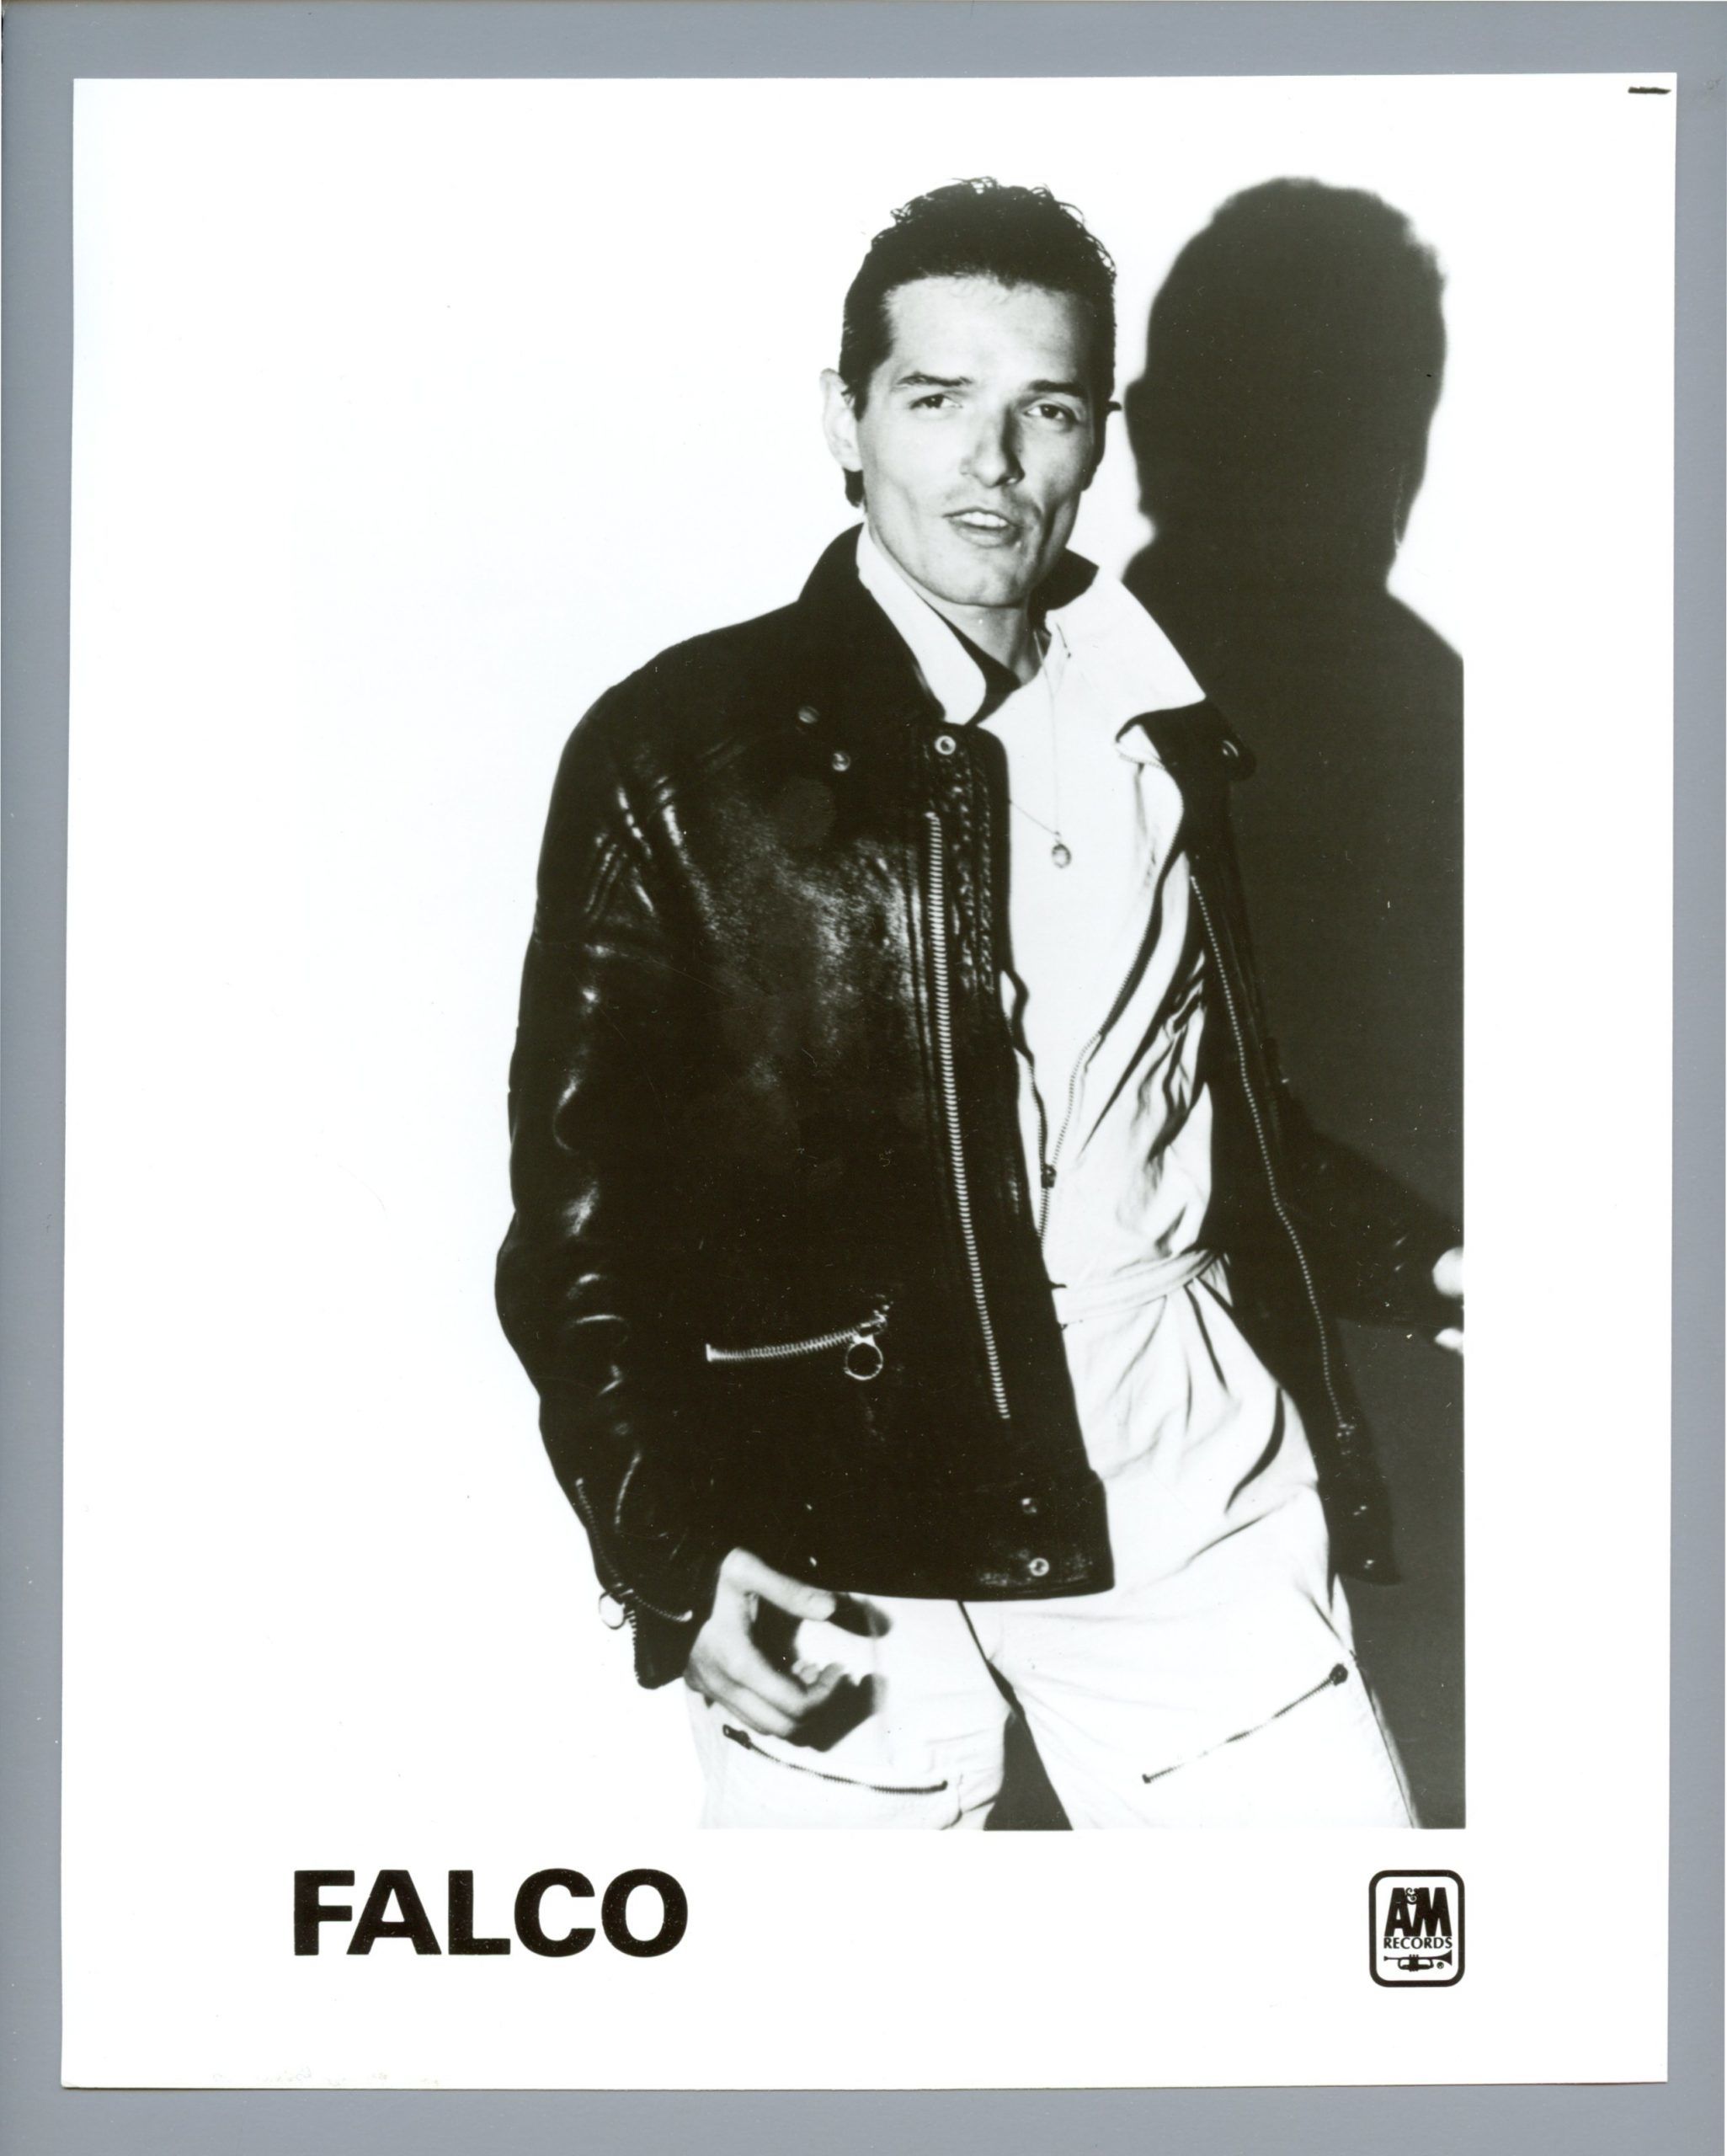 FALCO Photo 1980s A&M Records